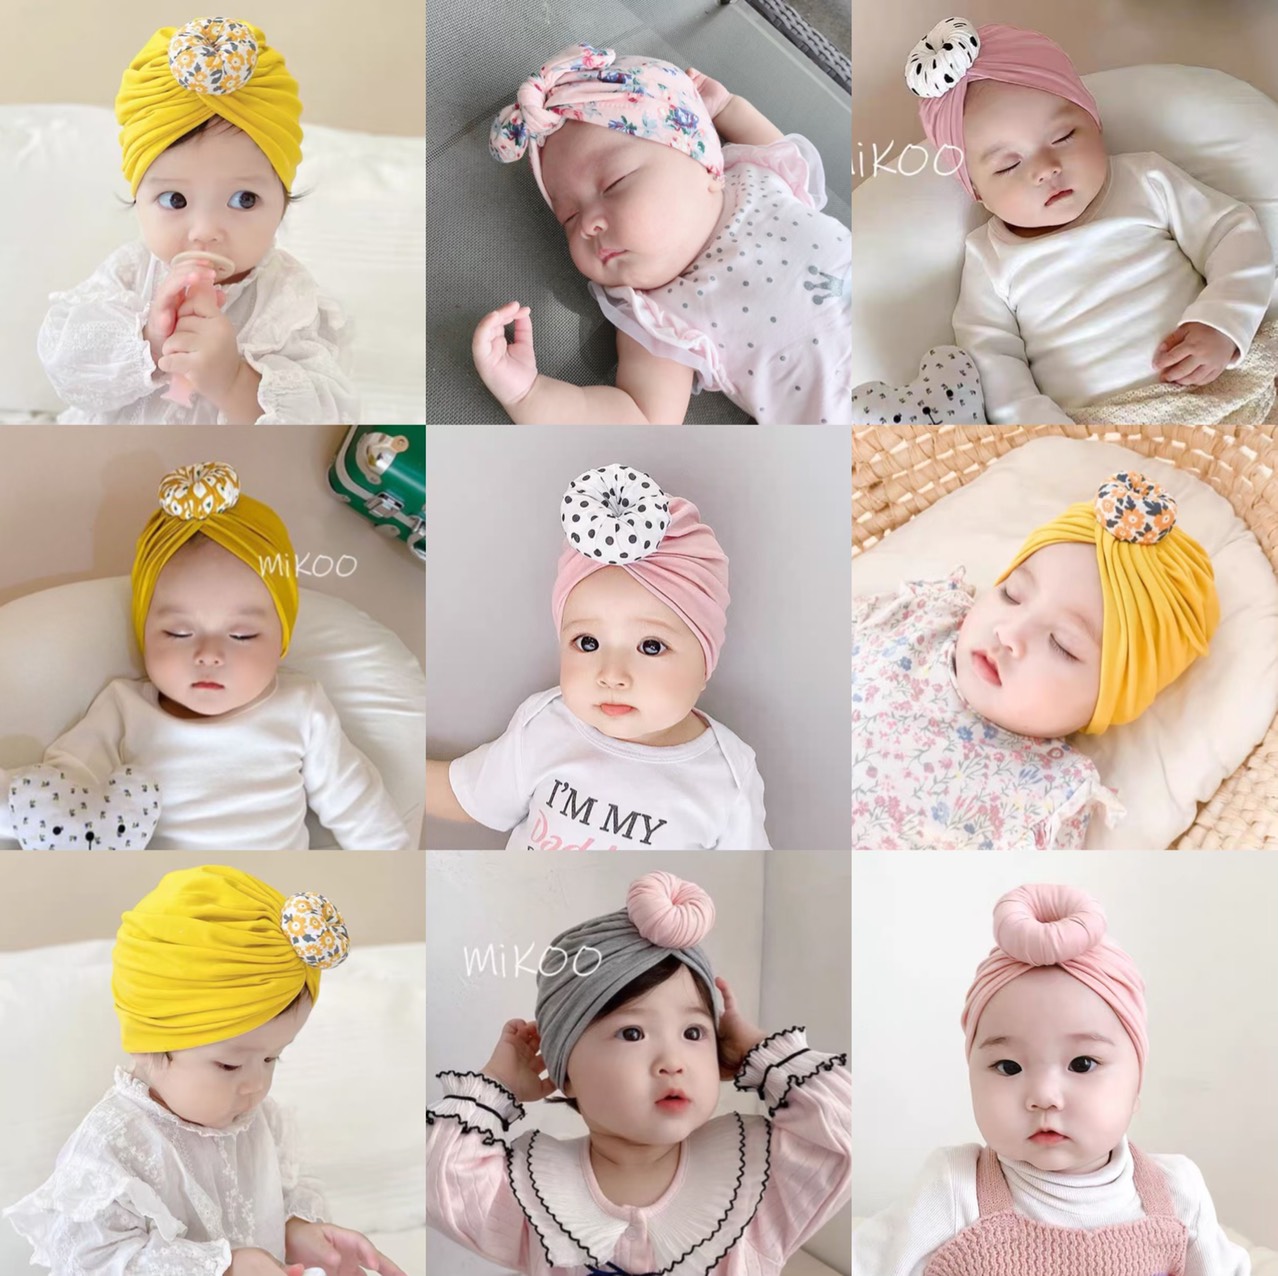 Xem thêm các mẫu khác Nón turban cho bé gái sơ sinh giá rẻ TPHCM tại Zalo 0942 80 80 93Nón turban cho bé gái sơ sinh giá rẻ TPHCM